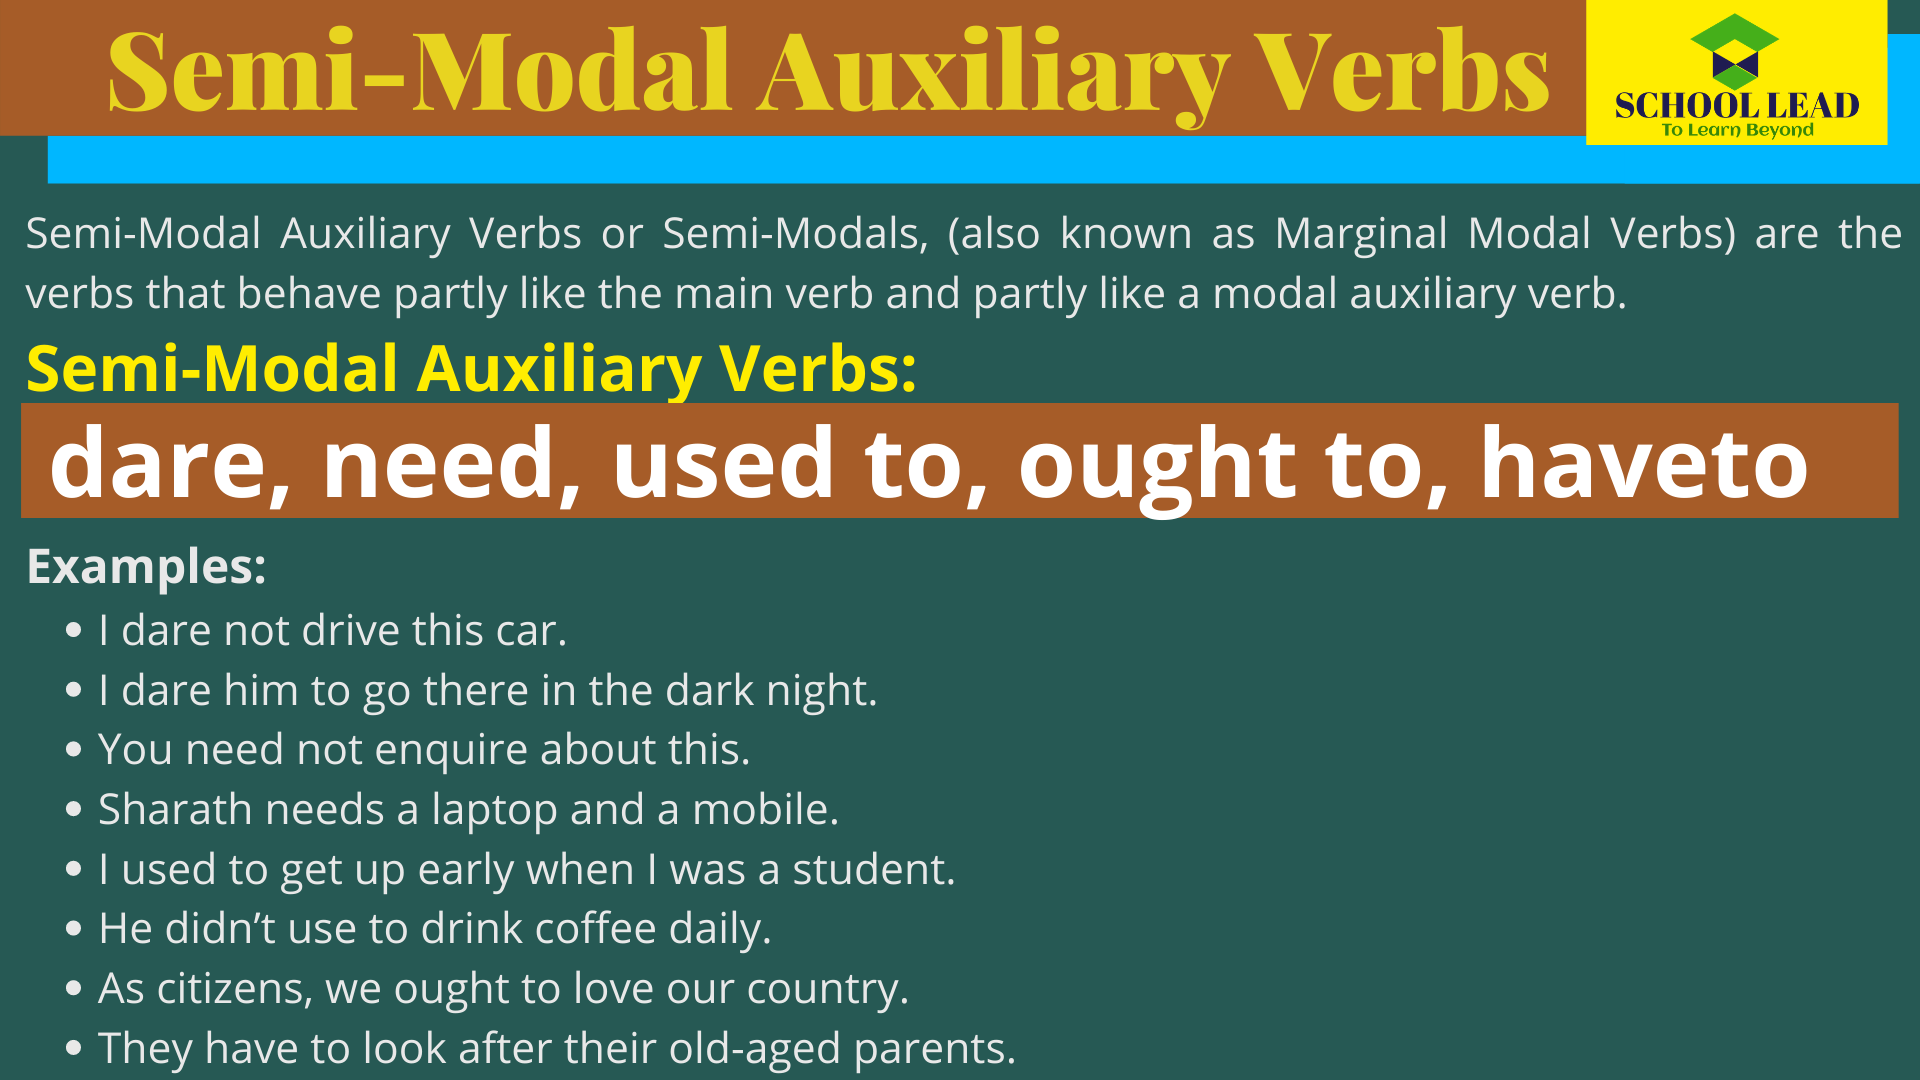 Semi-Modal Auxiliary Verbs